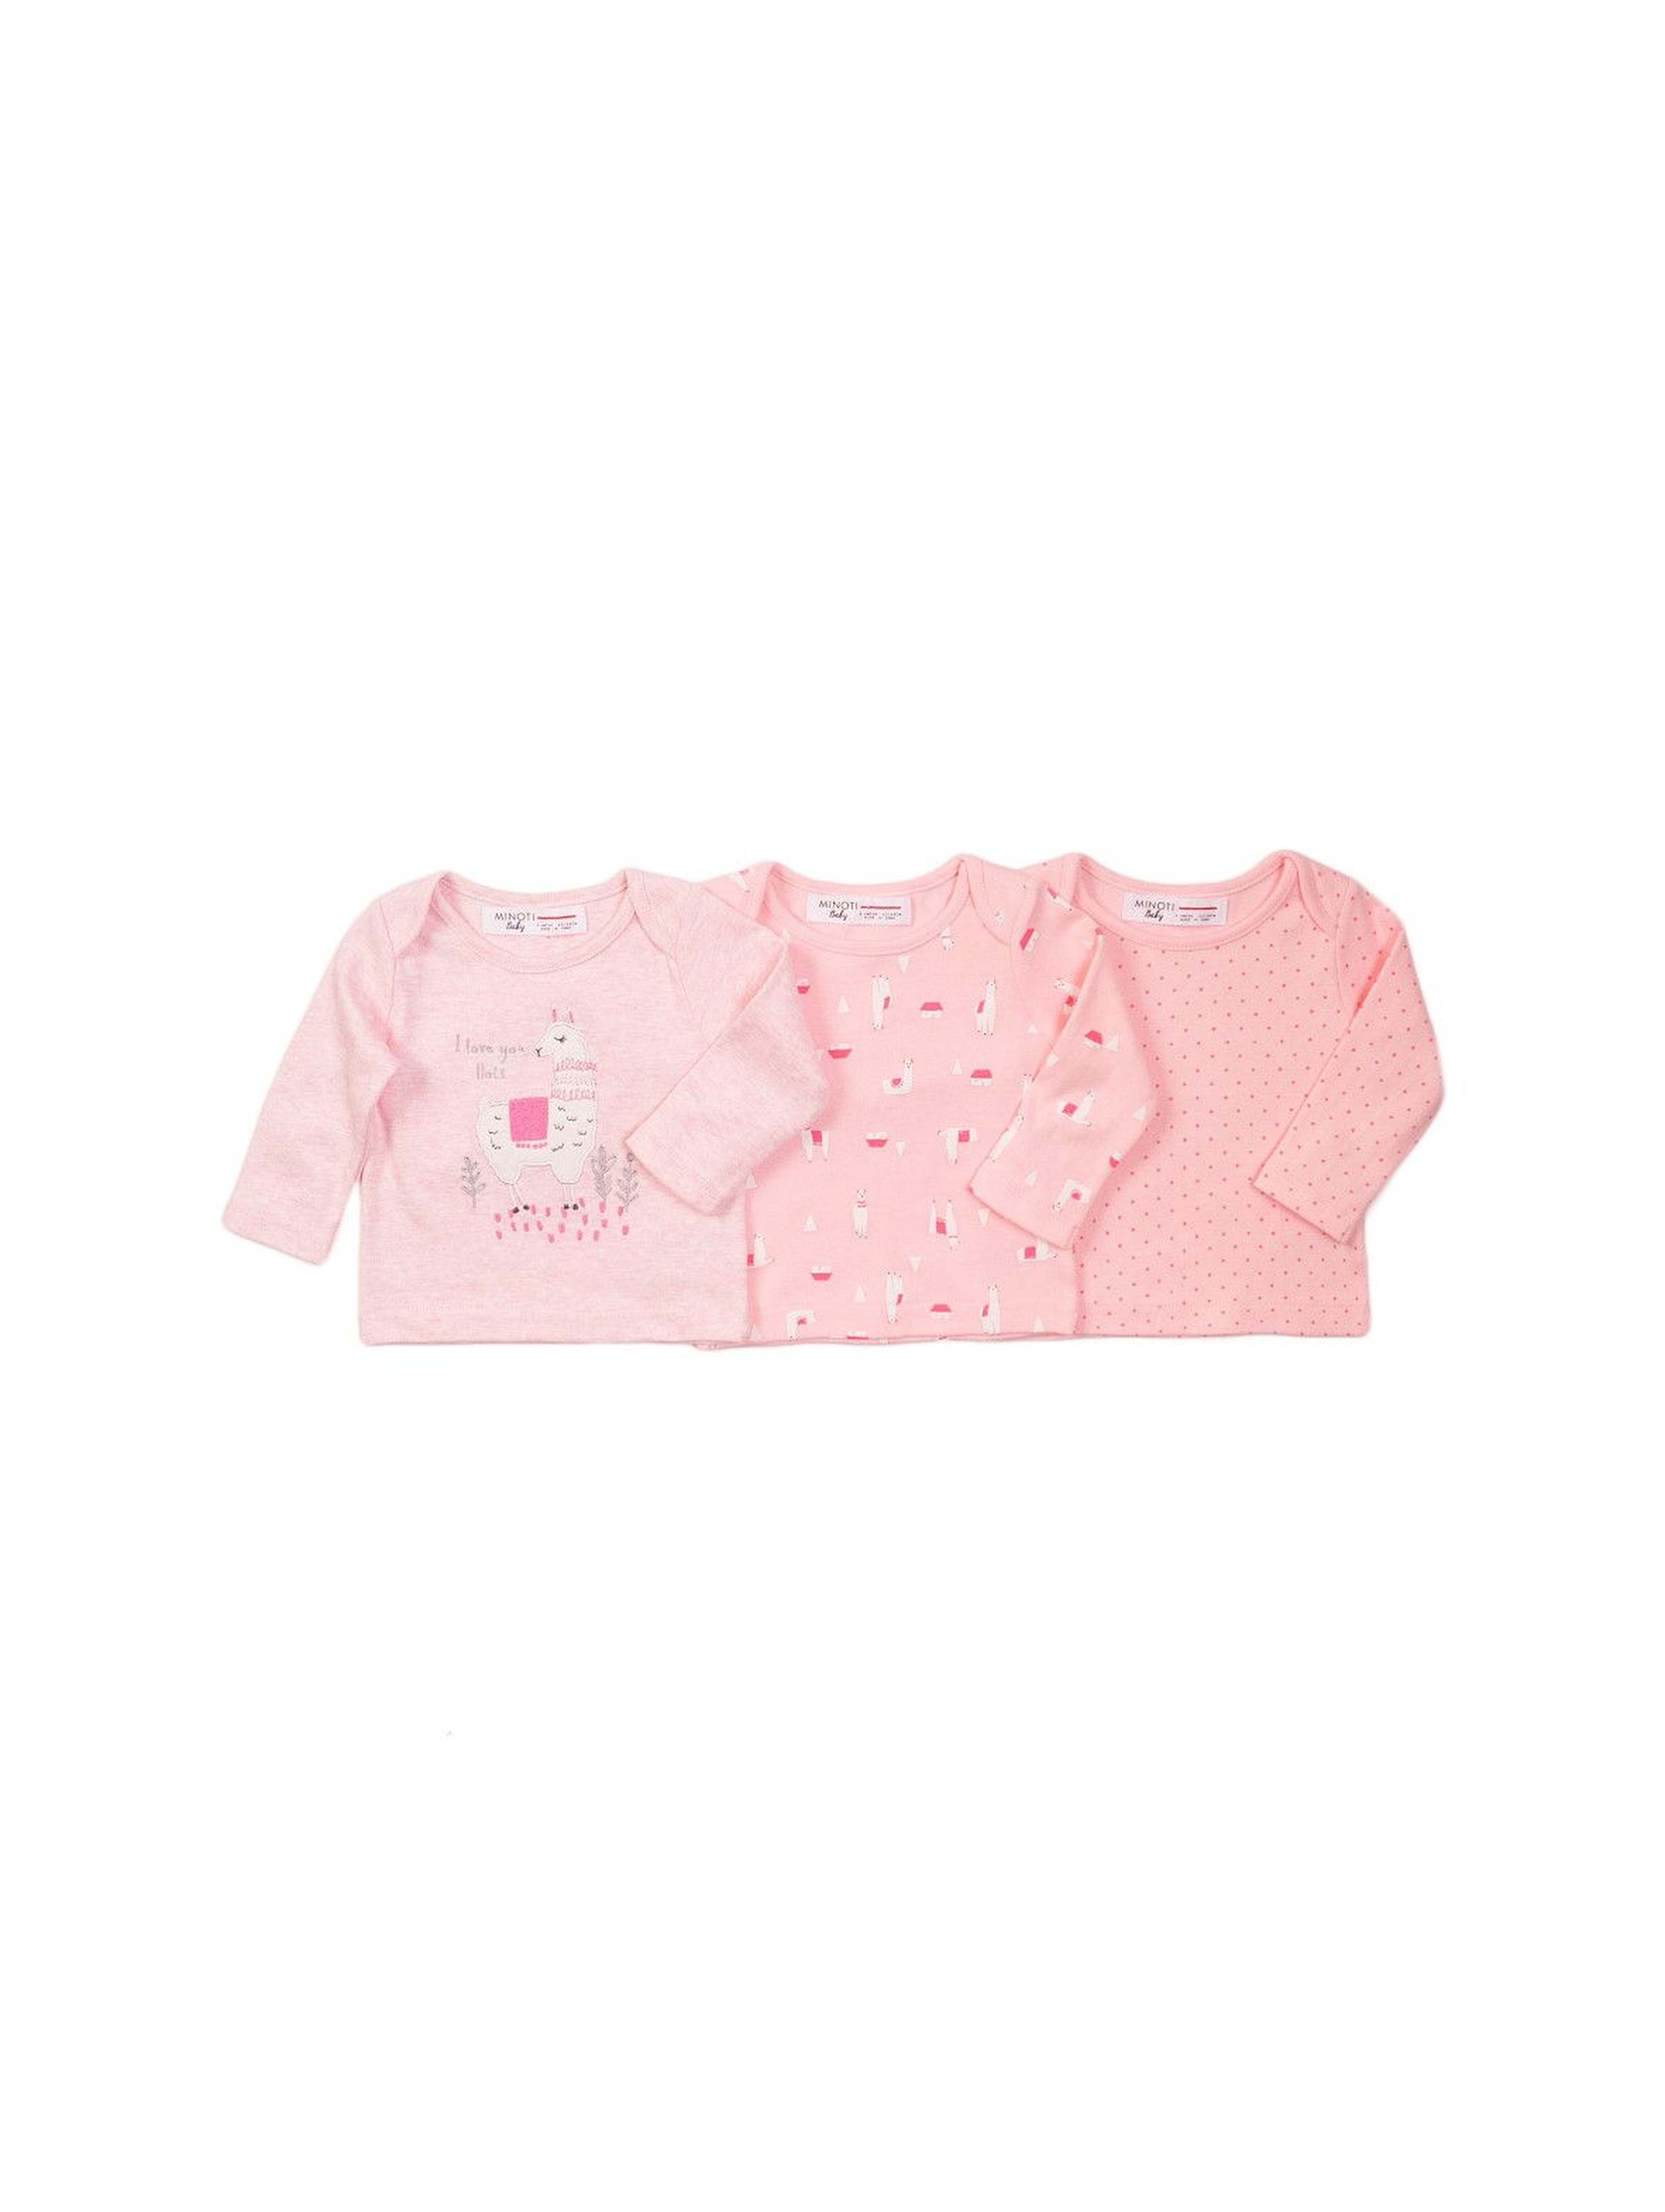 Bluzki dla niemowlaka - różowe z długim rękawem